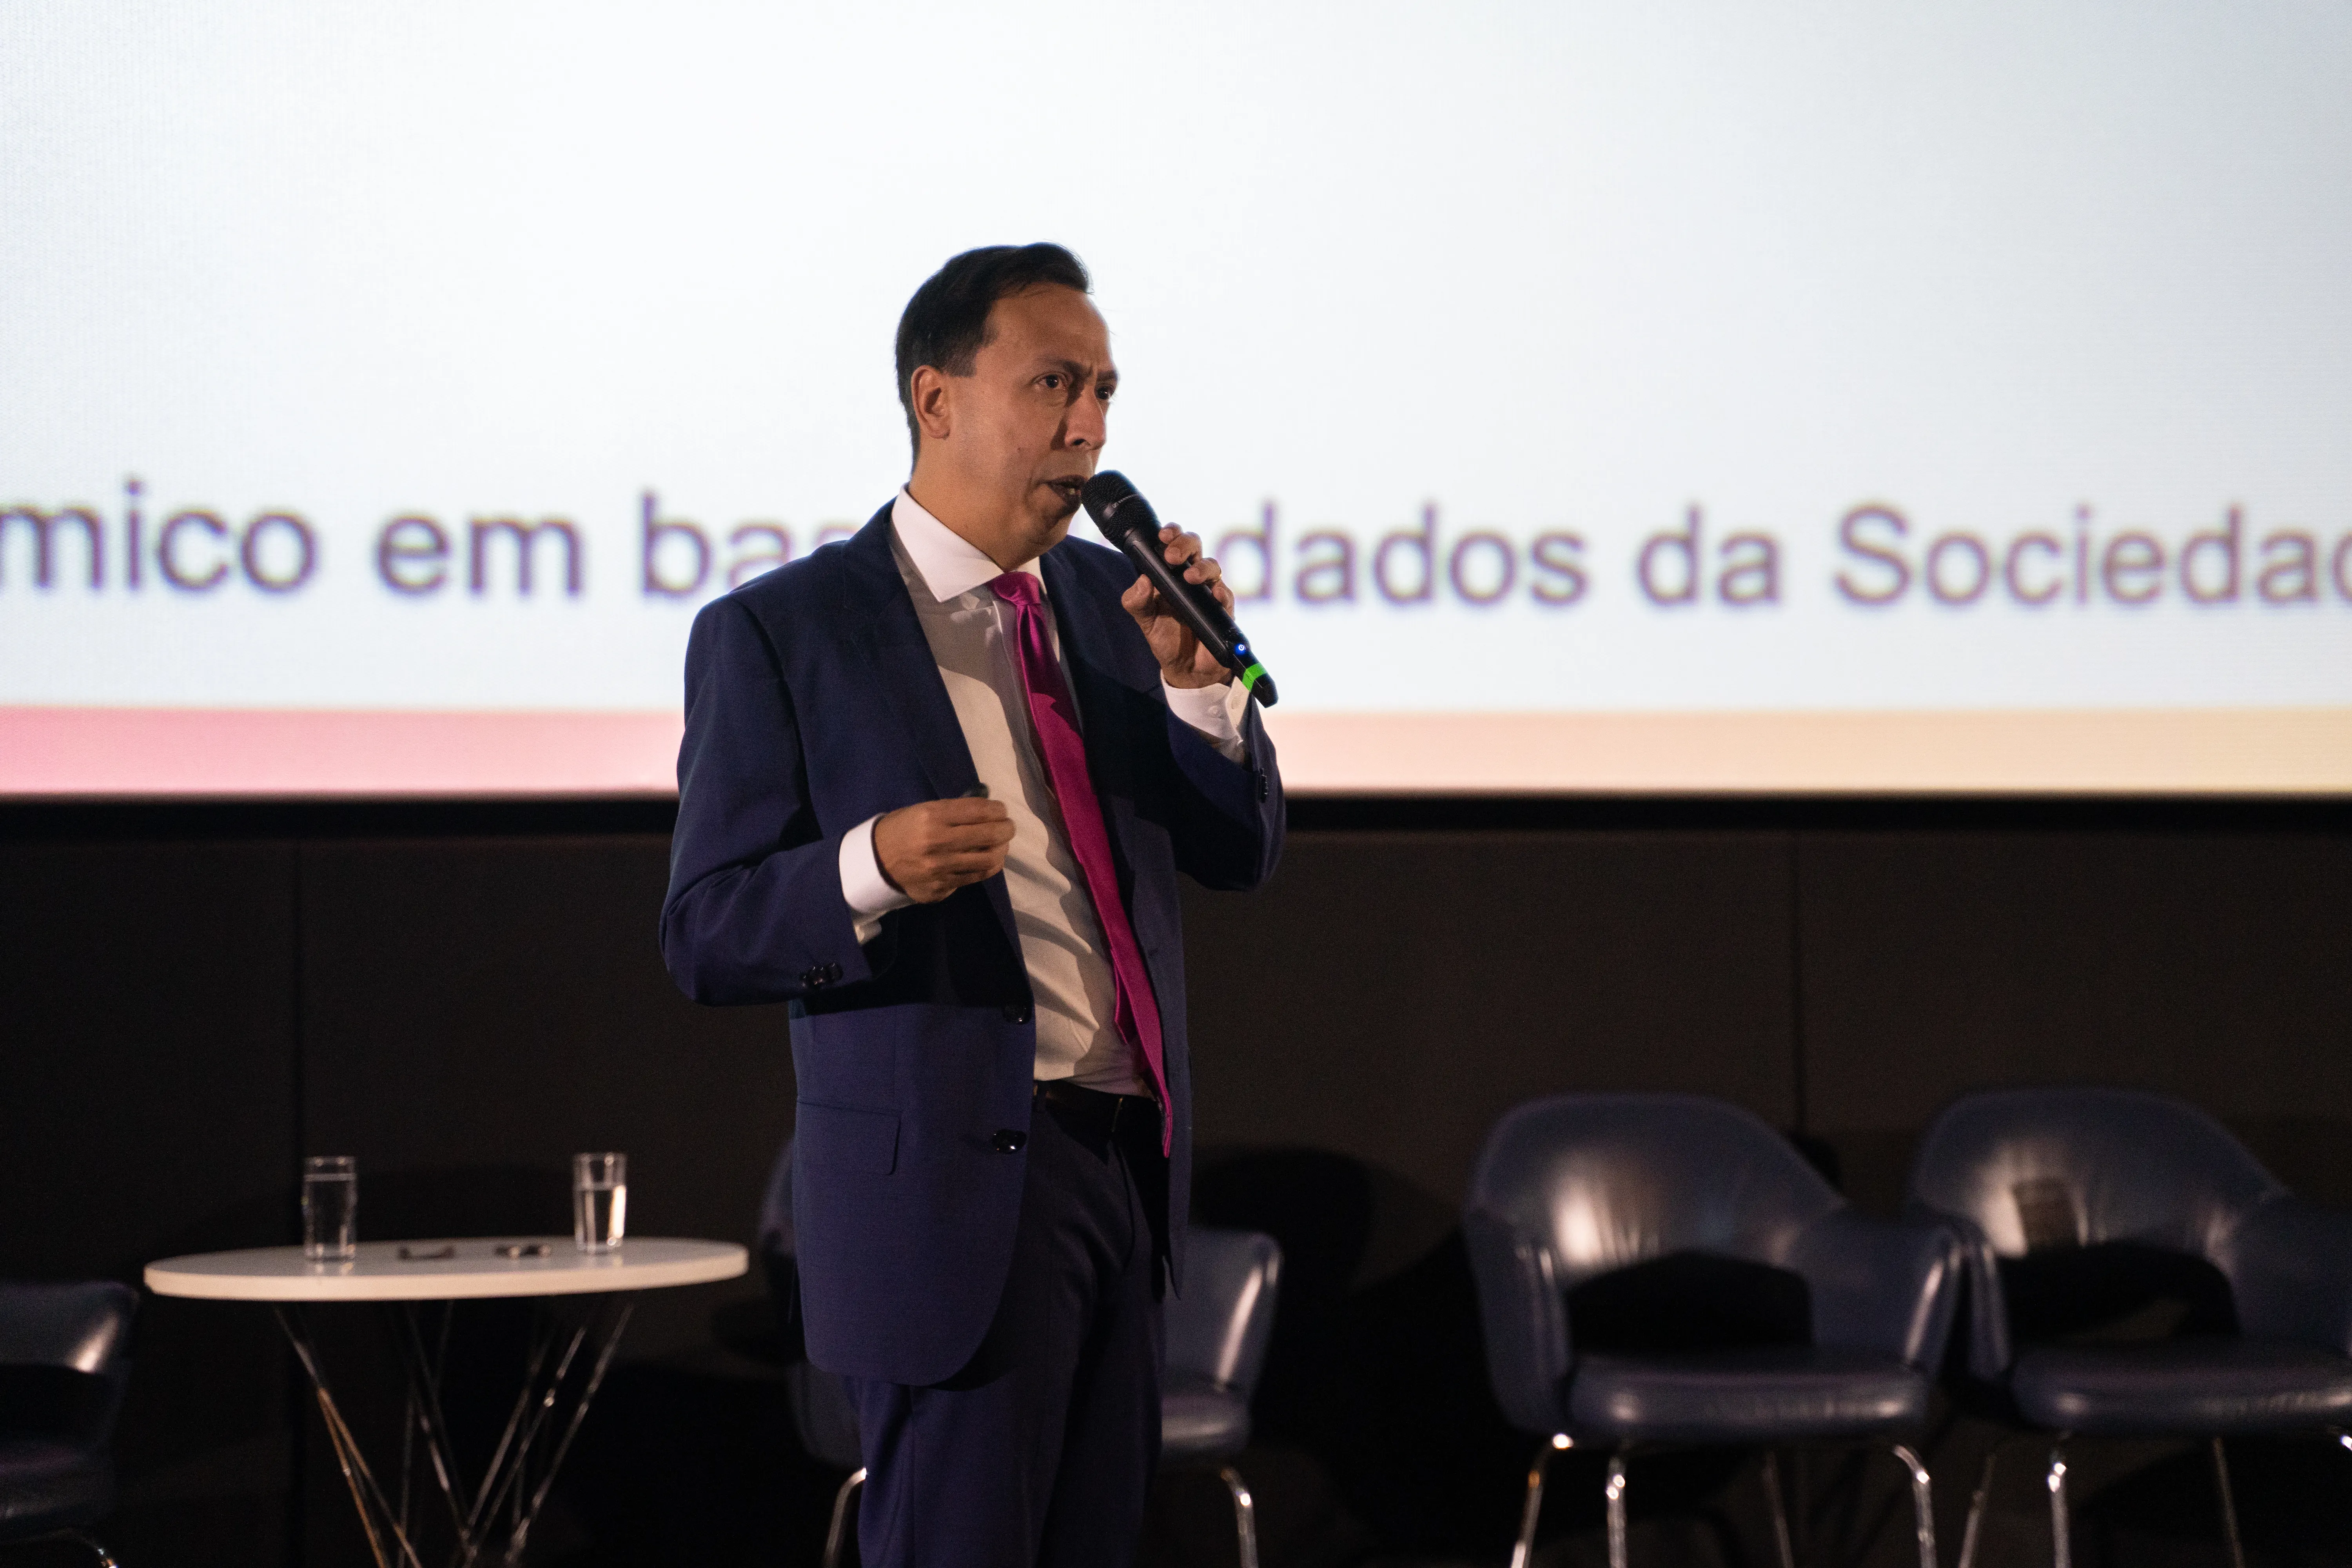 Coordenador da Comissão de Lúpus Eritematoso Sistêmico da Sociedade Brasileira de Reumatologia (SBR), Edgard Reis